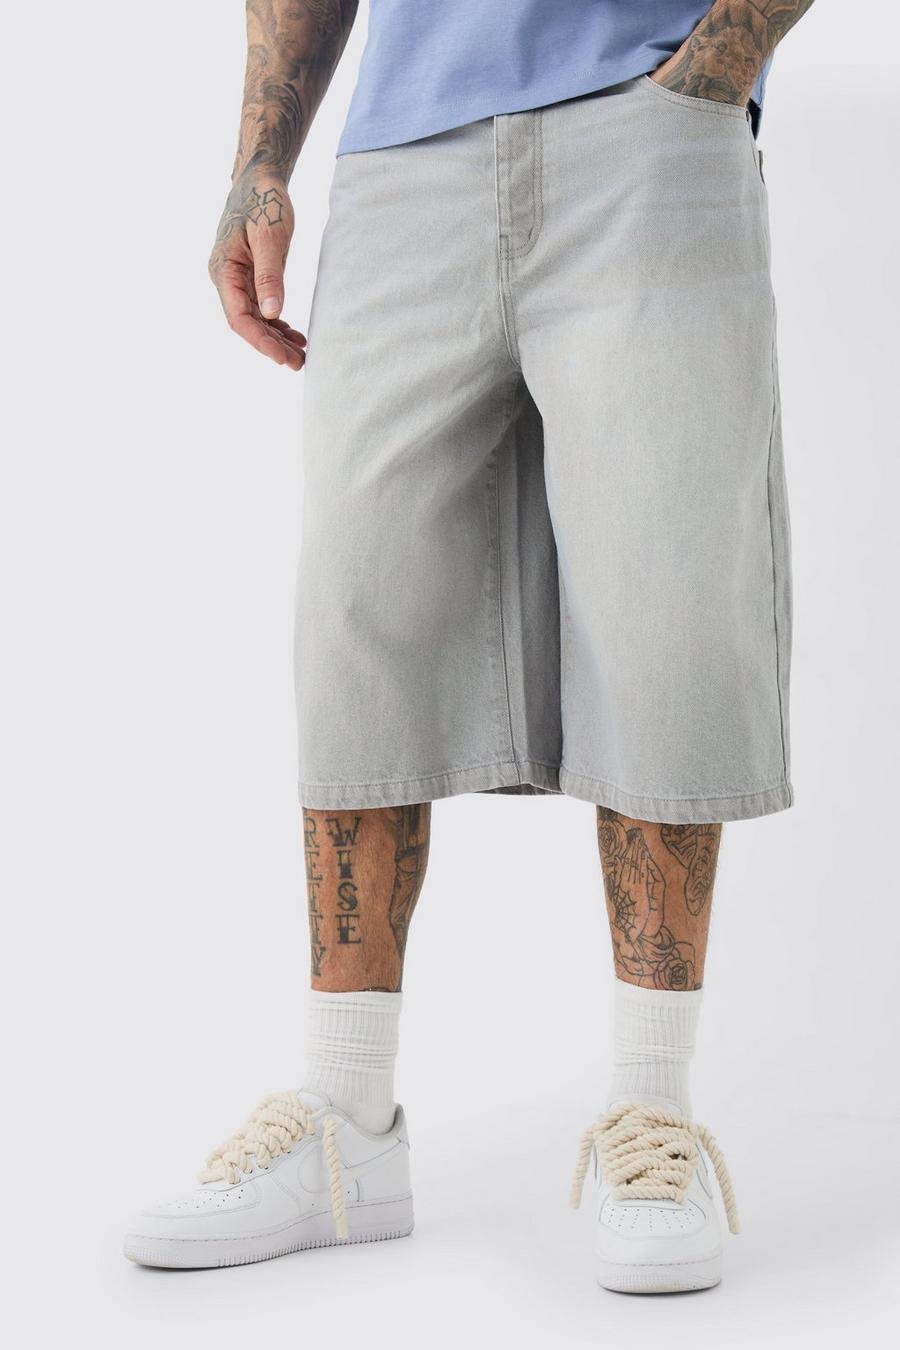 Pantalón deportivo Tall largo con lavado gris, Grey